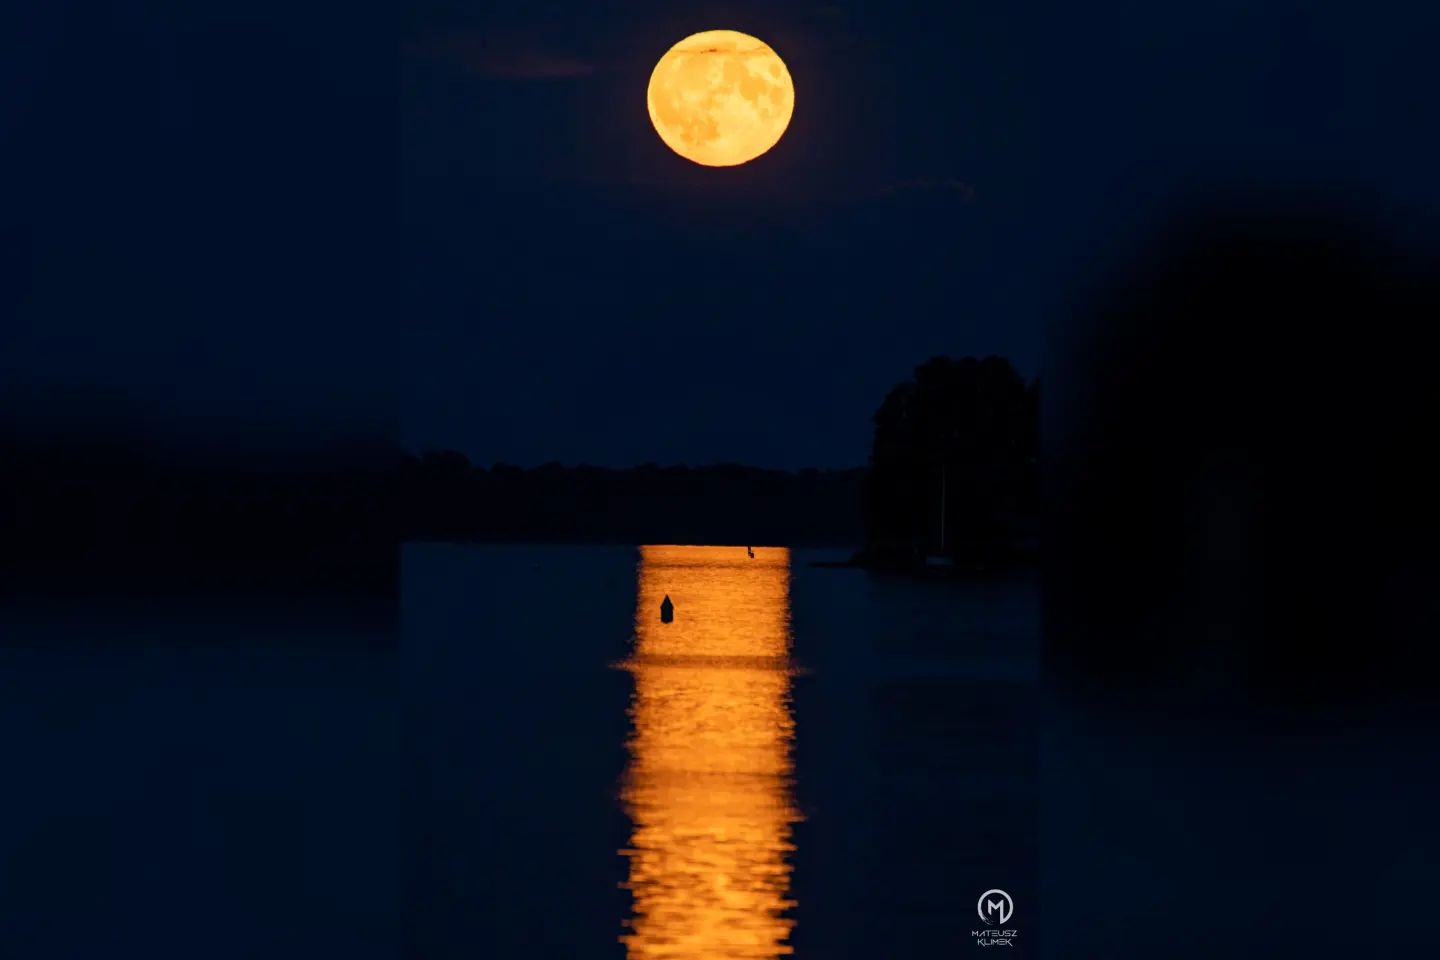 W tym tygodniu mieliśmy szansę oglądać wschód księżyca w pełni na tle jeziora Mikołajskiego 🤩🌕🌃
________
#mikolajki #mik